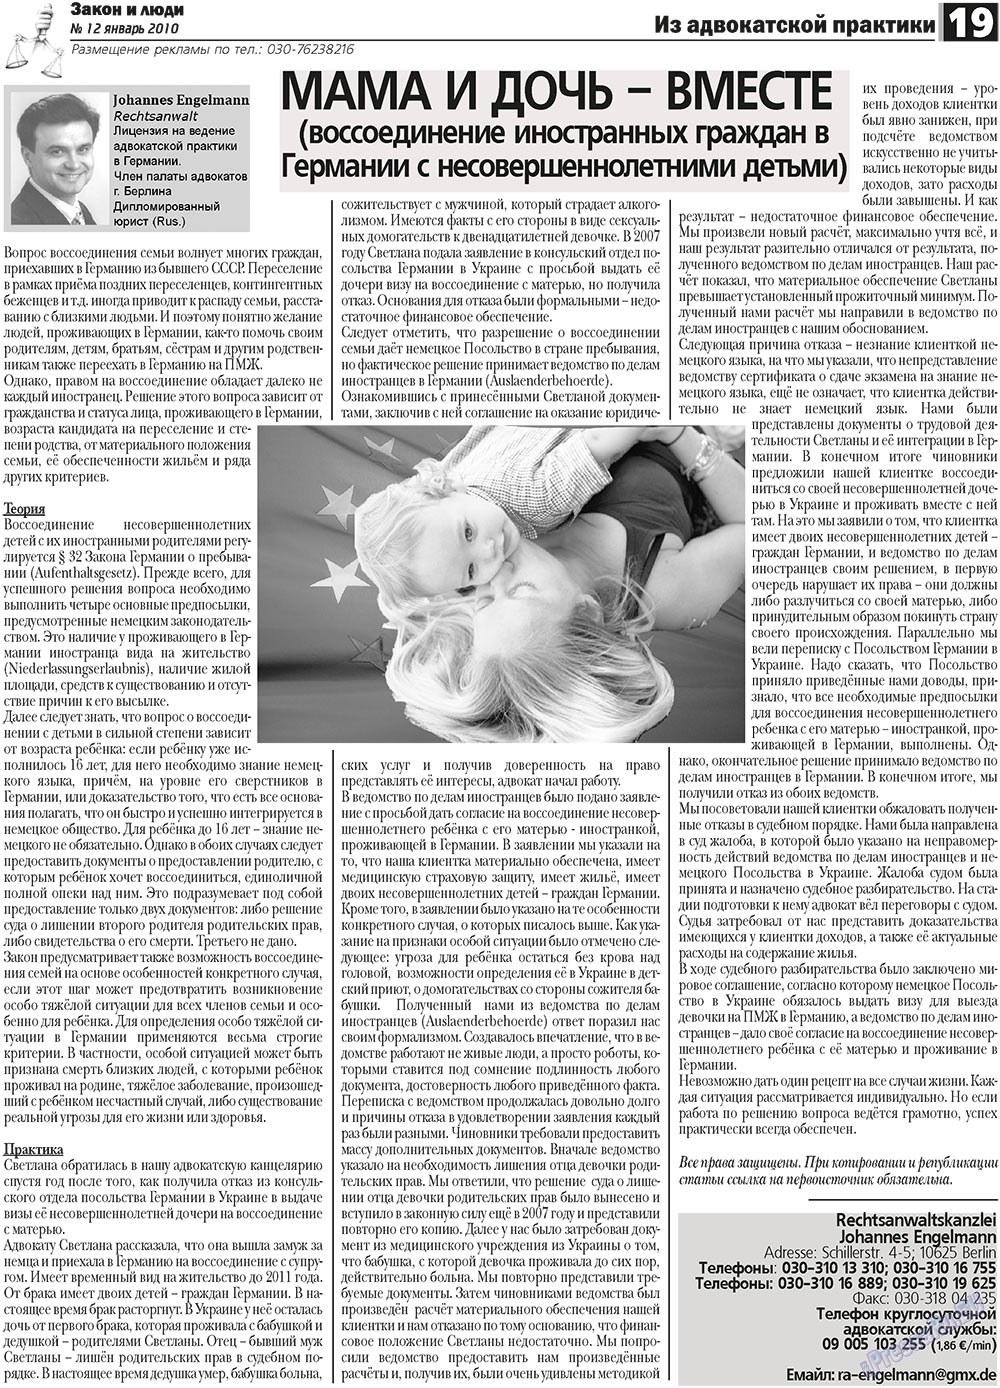 Закон и люди, газета. 2011 №1 стр.19